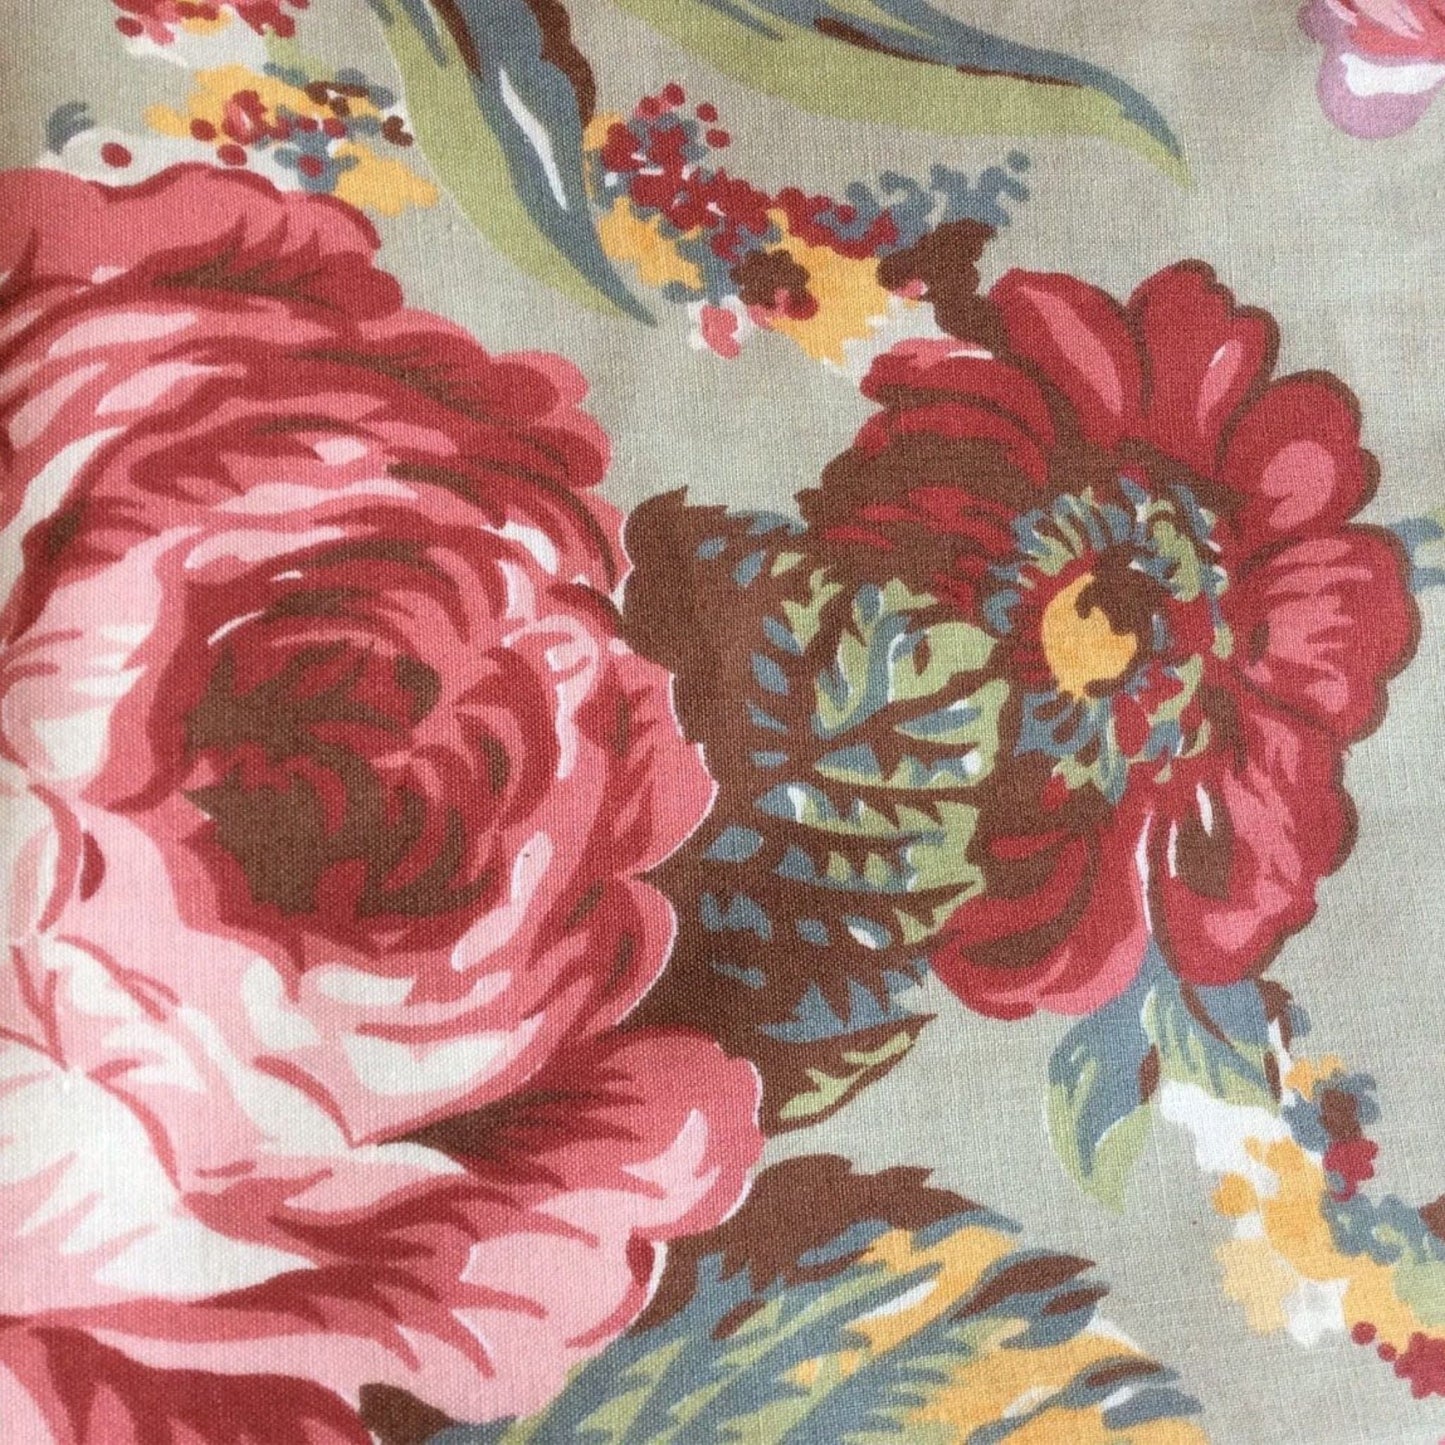 Vintage Ralph Lauren Fabric Multi / Cotton / Vintage 1990s